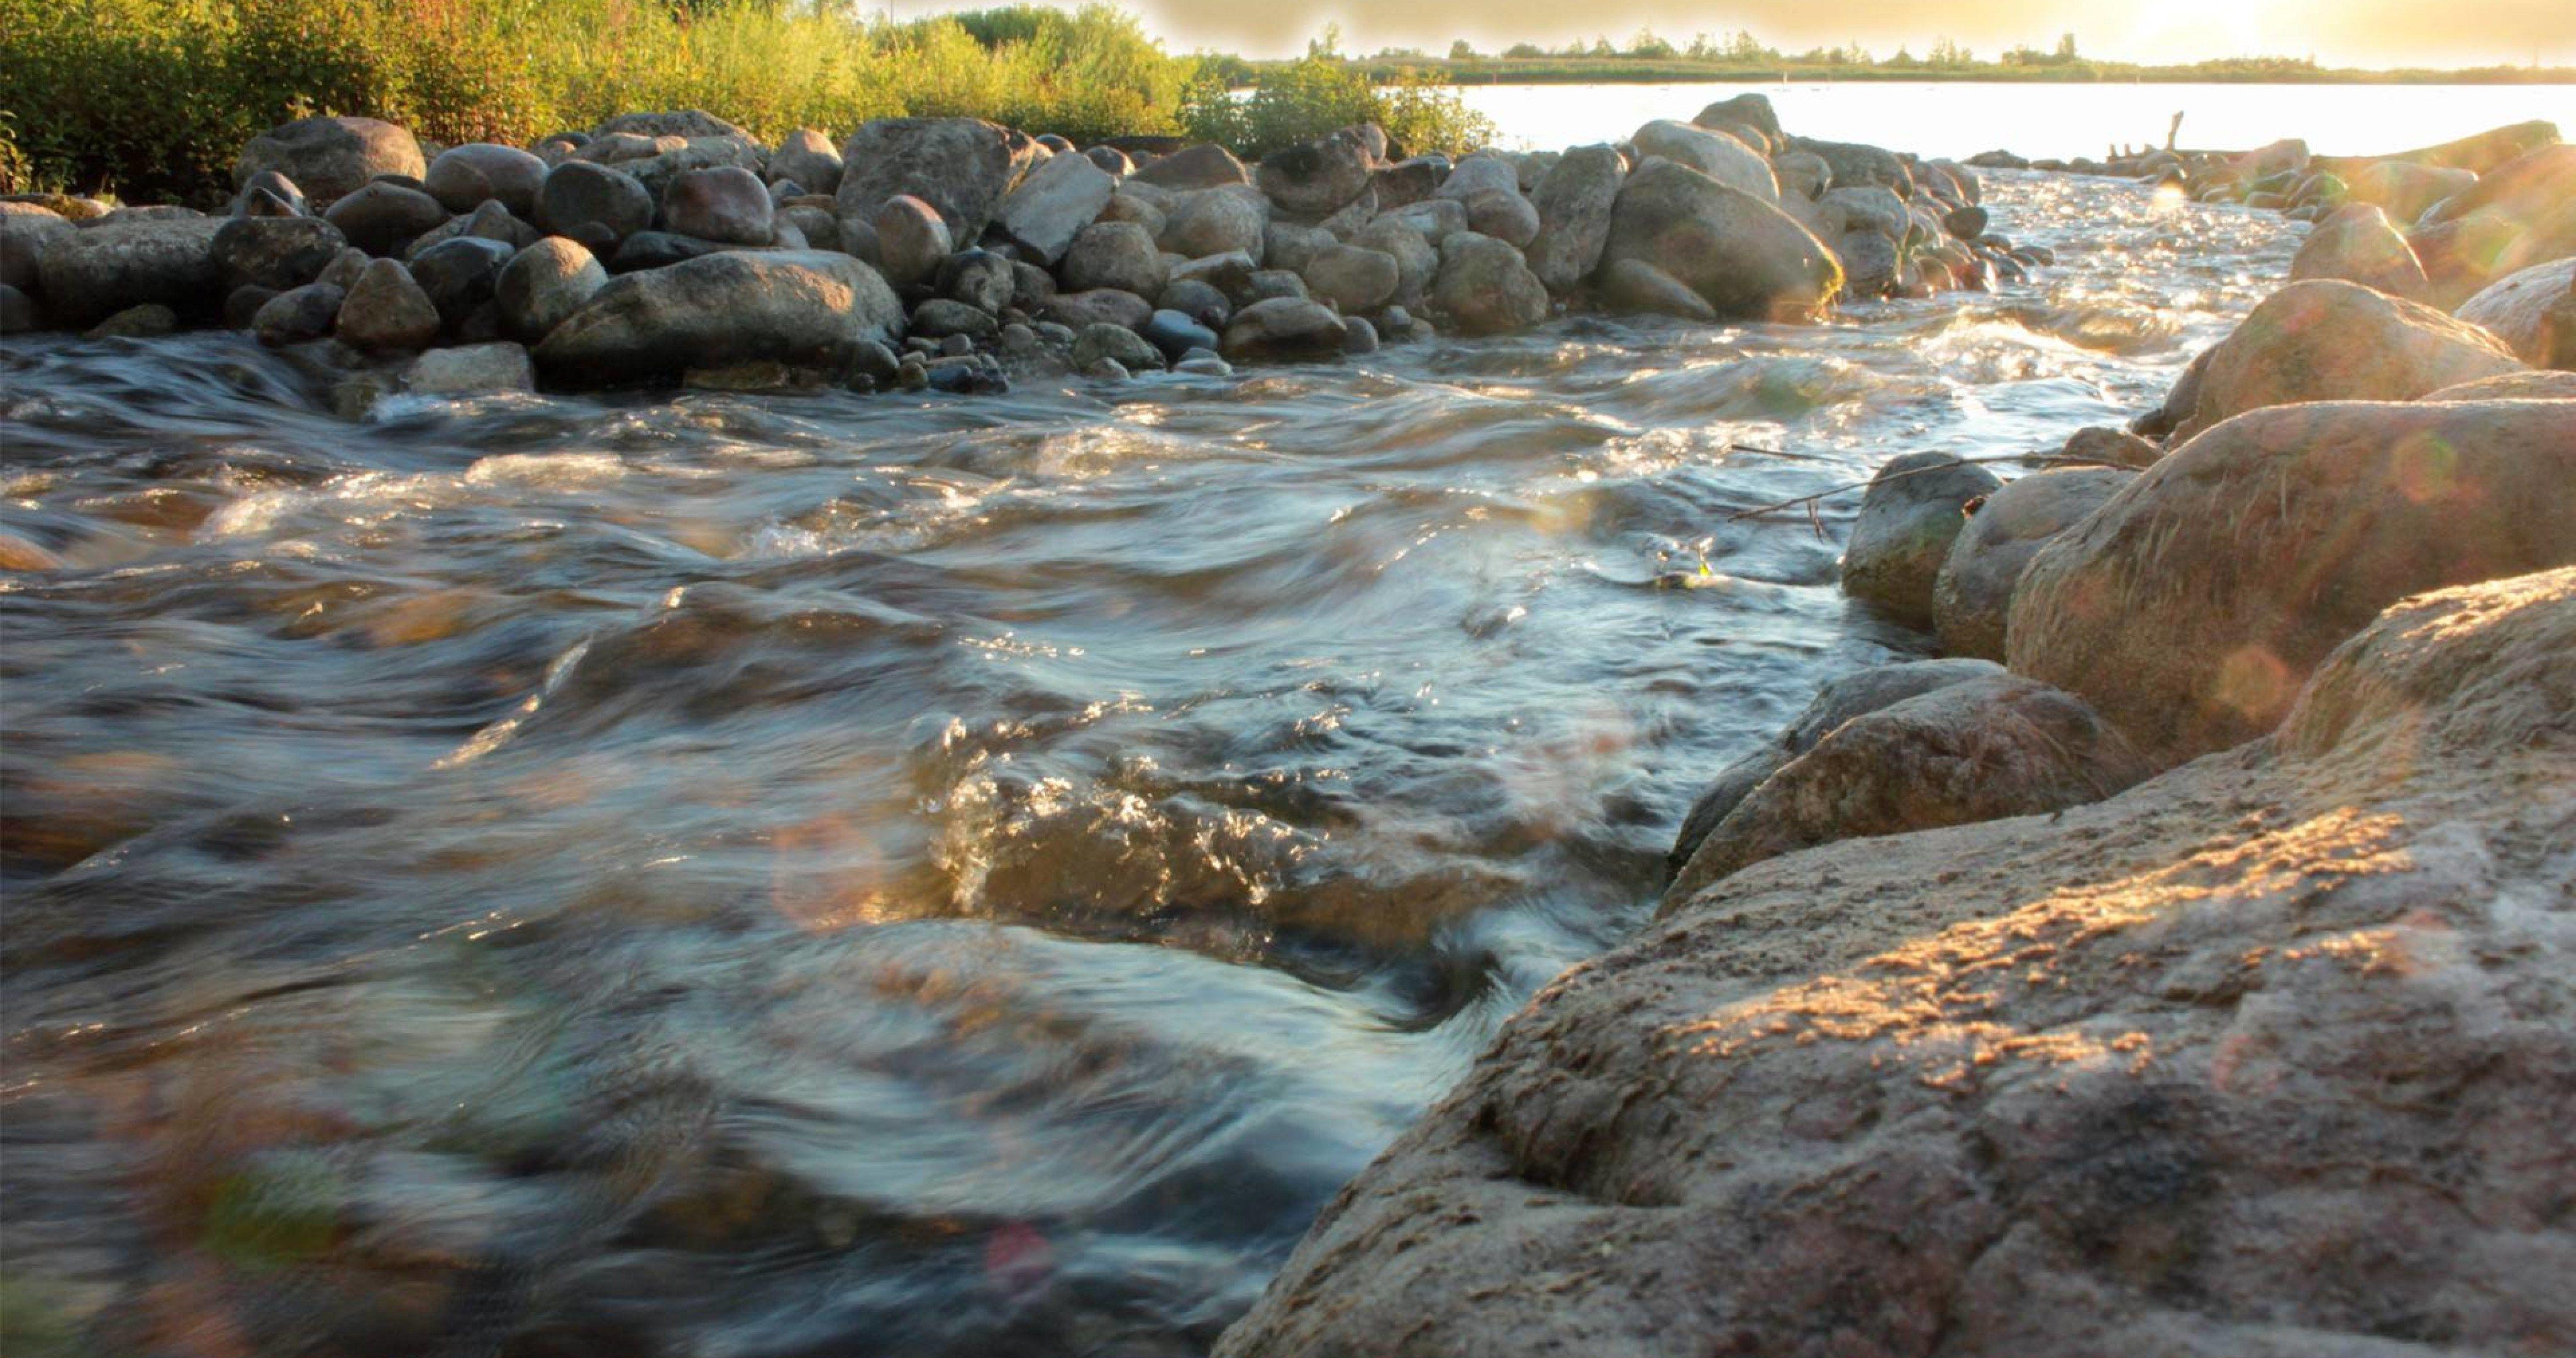 Не спокойными потоками воды. Вода река. Ручей с камнями. Каменистый берег реки. Камни в реке.